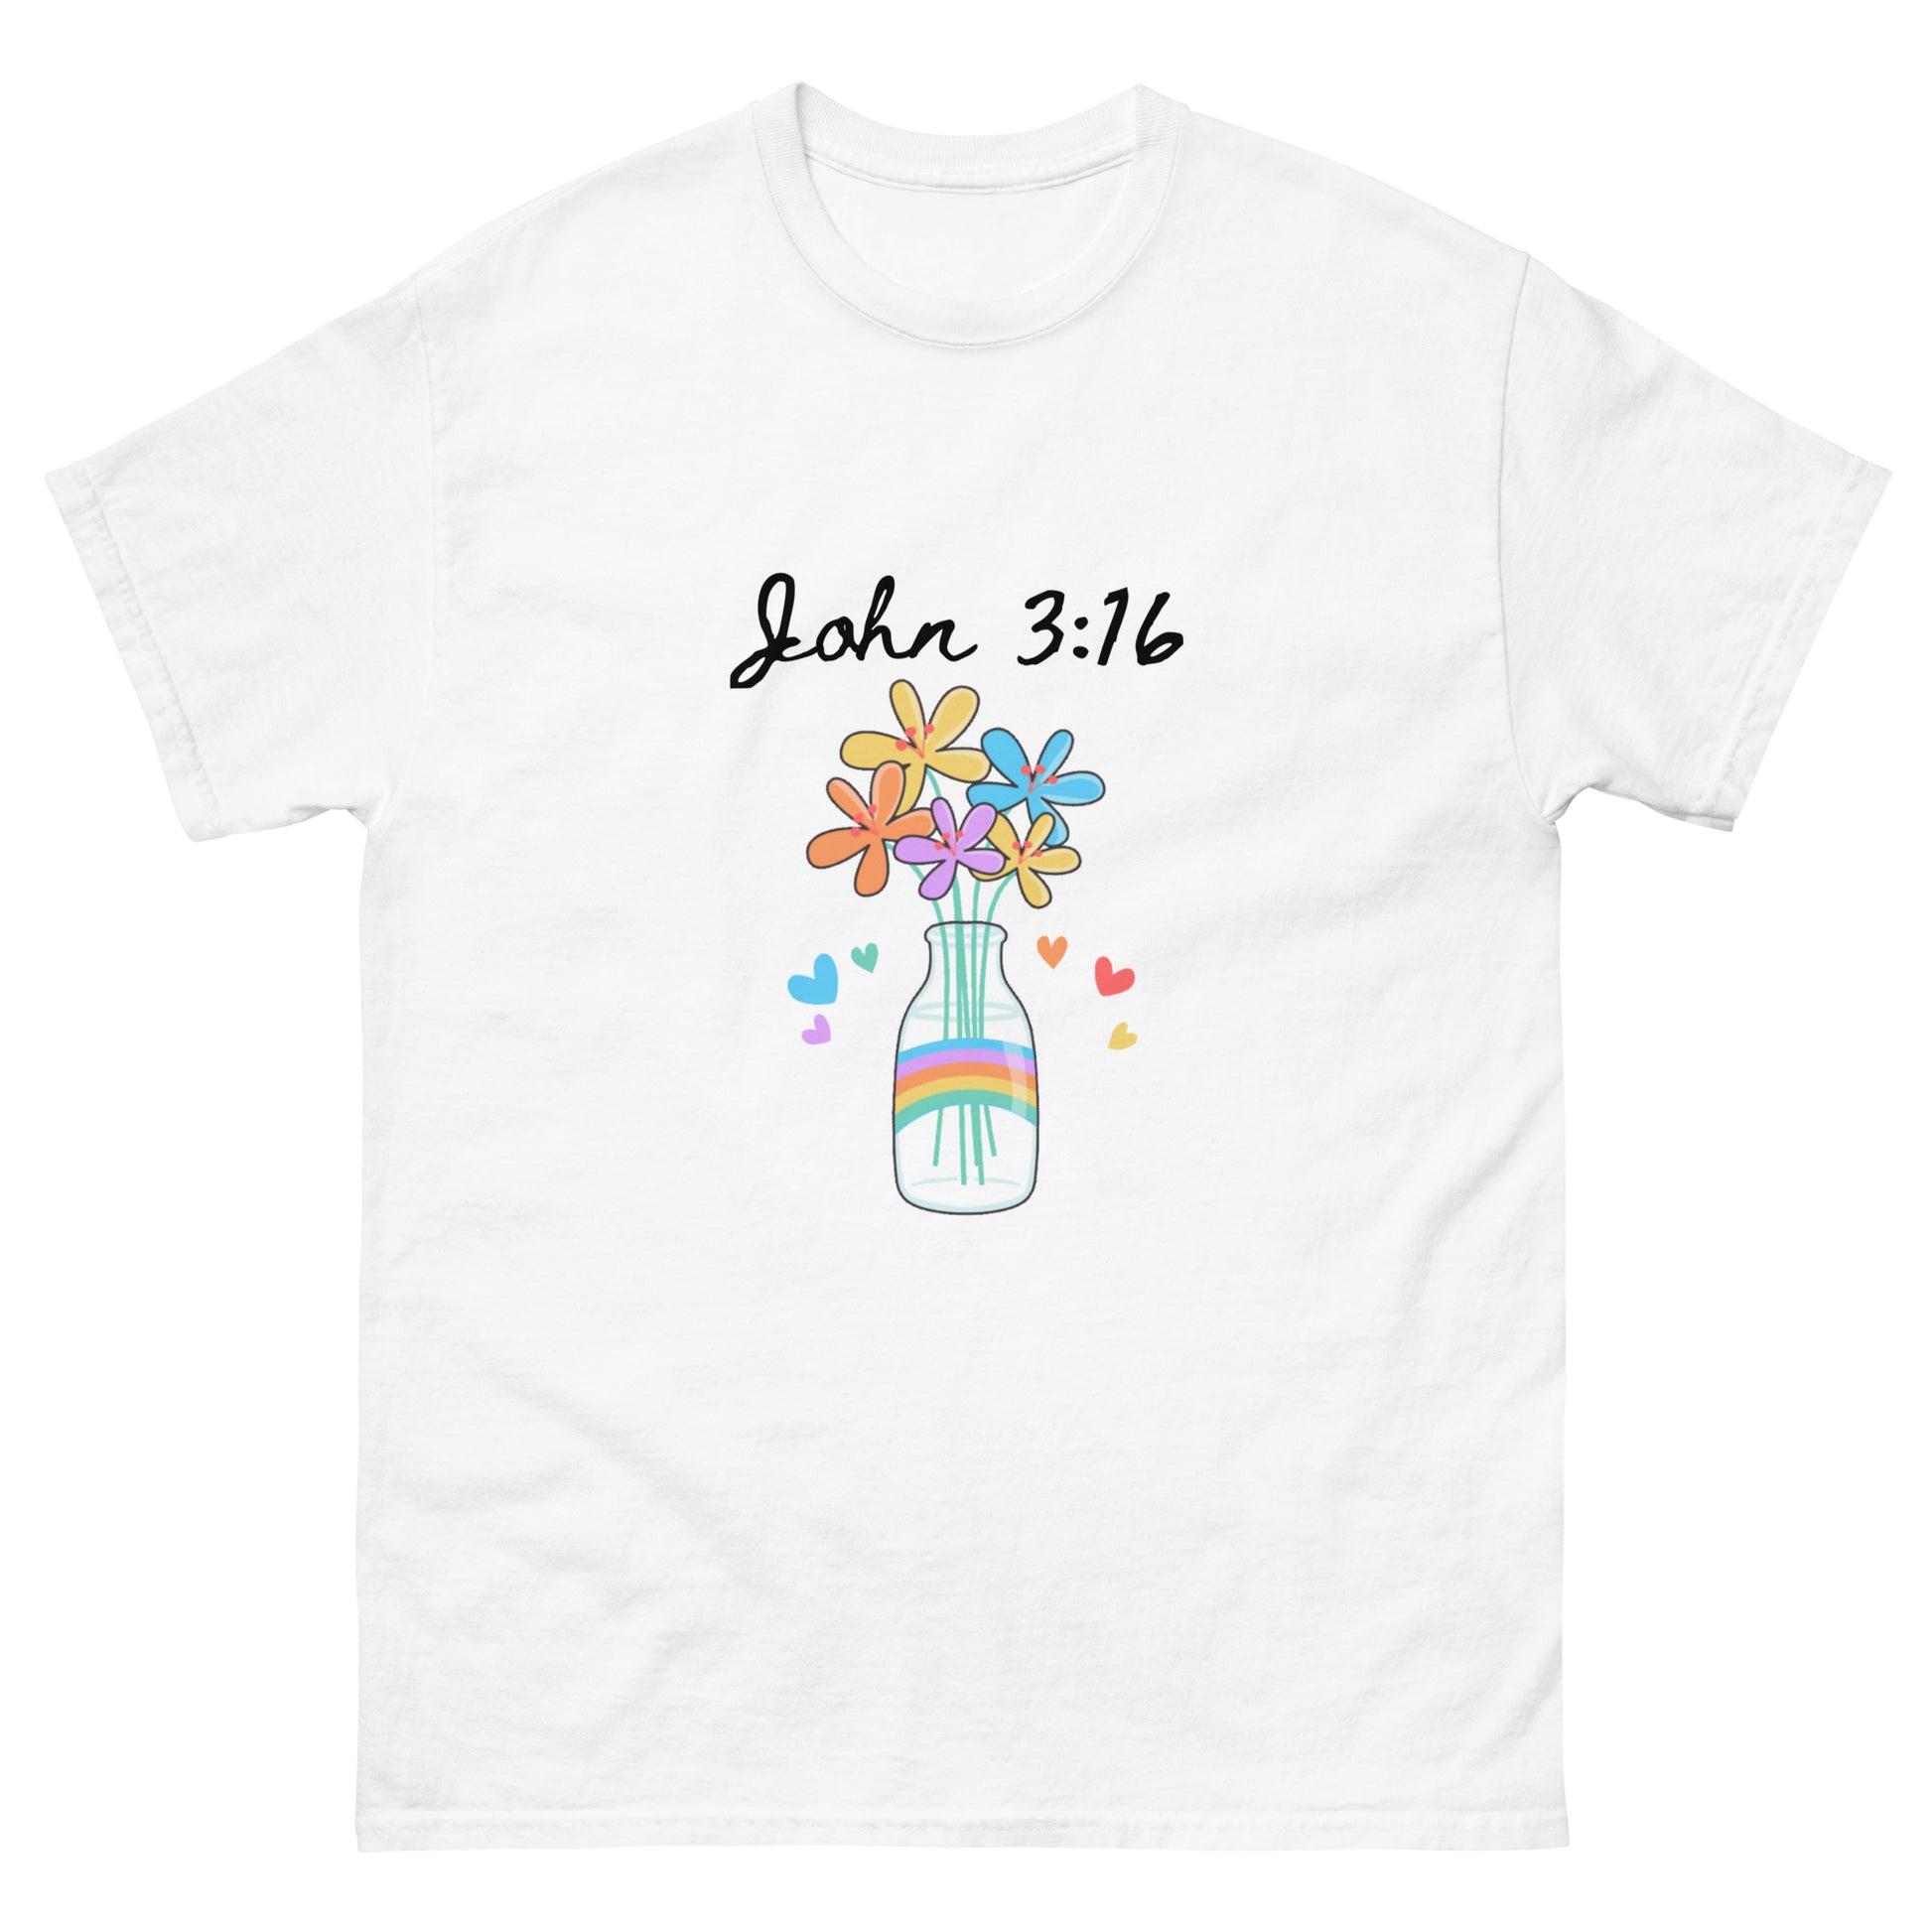 John 3:16 T-Shirt - The Good Life Vibe